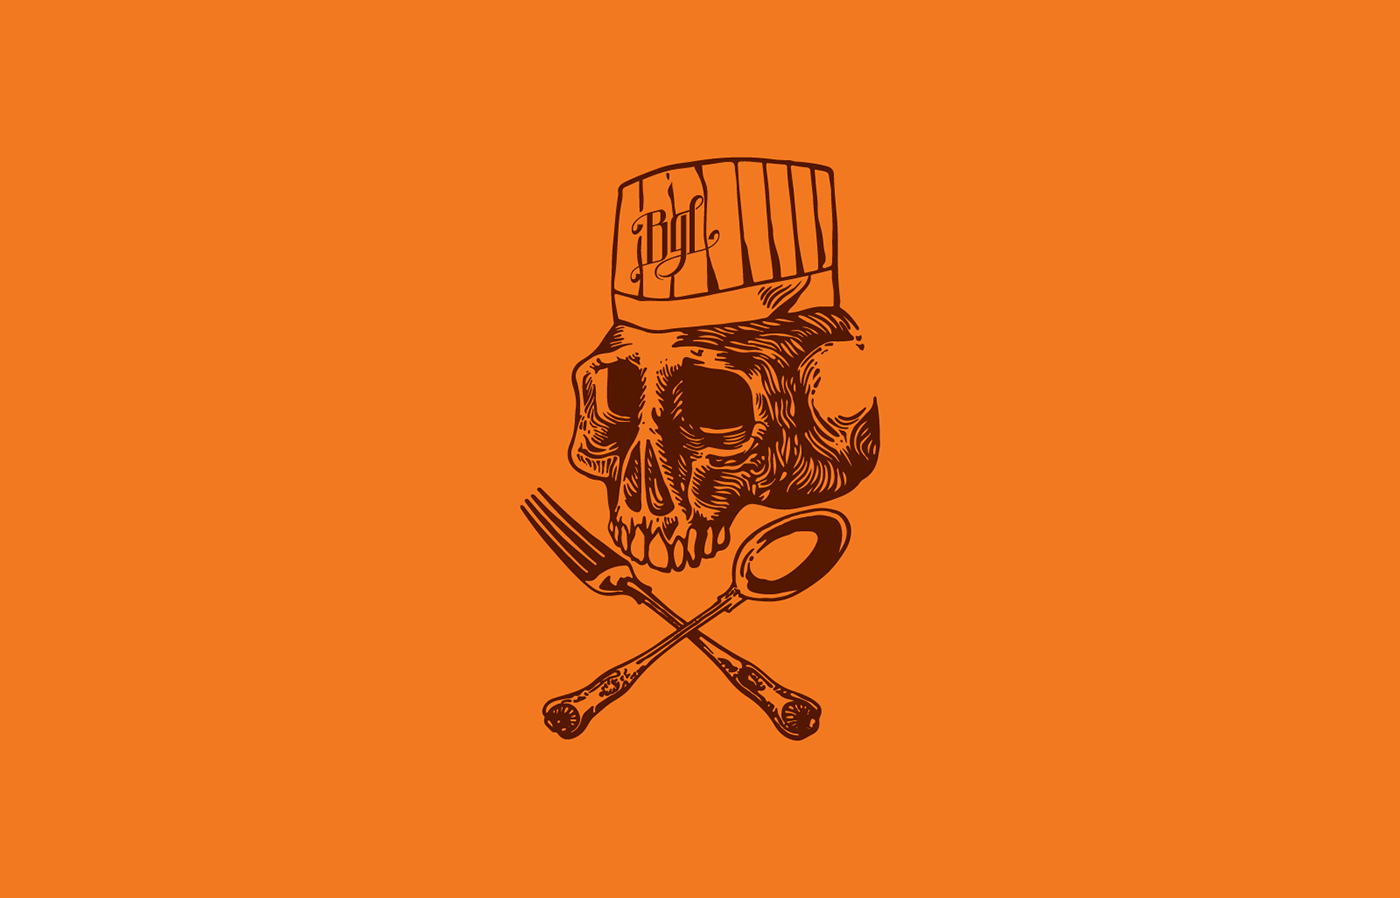 Adobe Portfolio restaurant rock skull orange brown chef kitchen funny fish t-shirt knife cozinha peixe caveira monograma